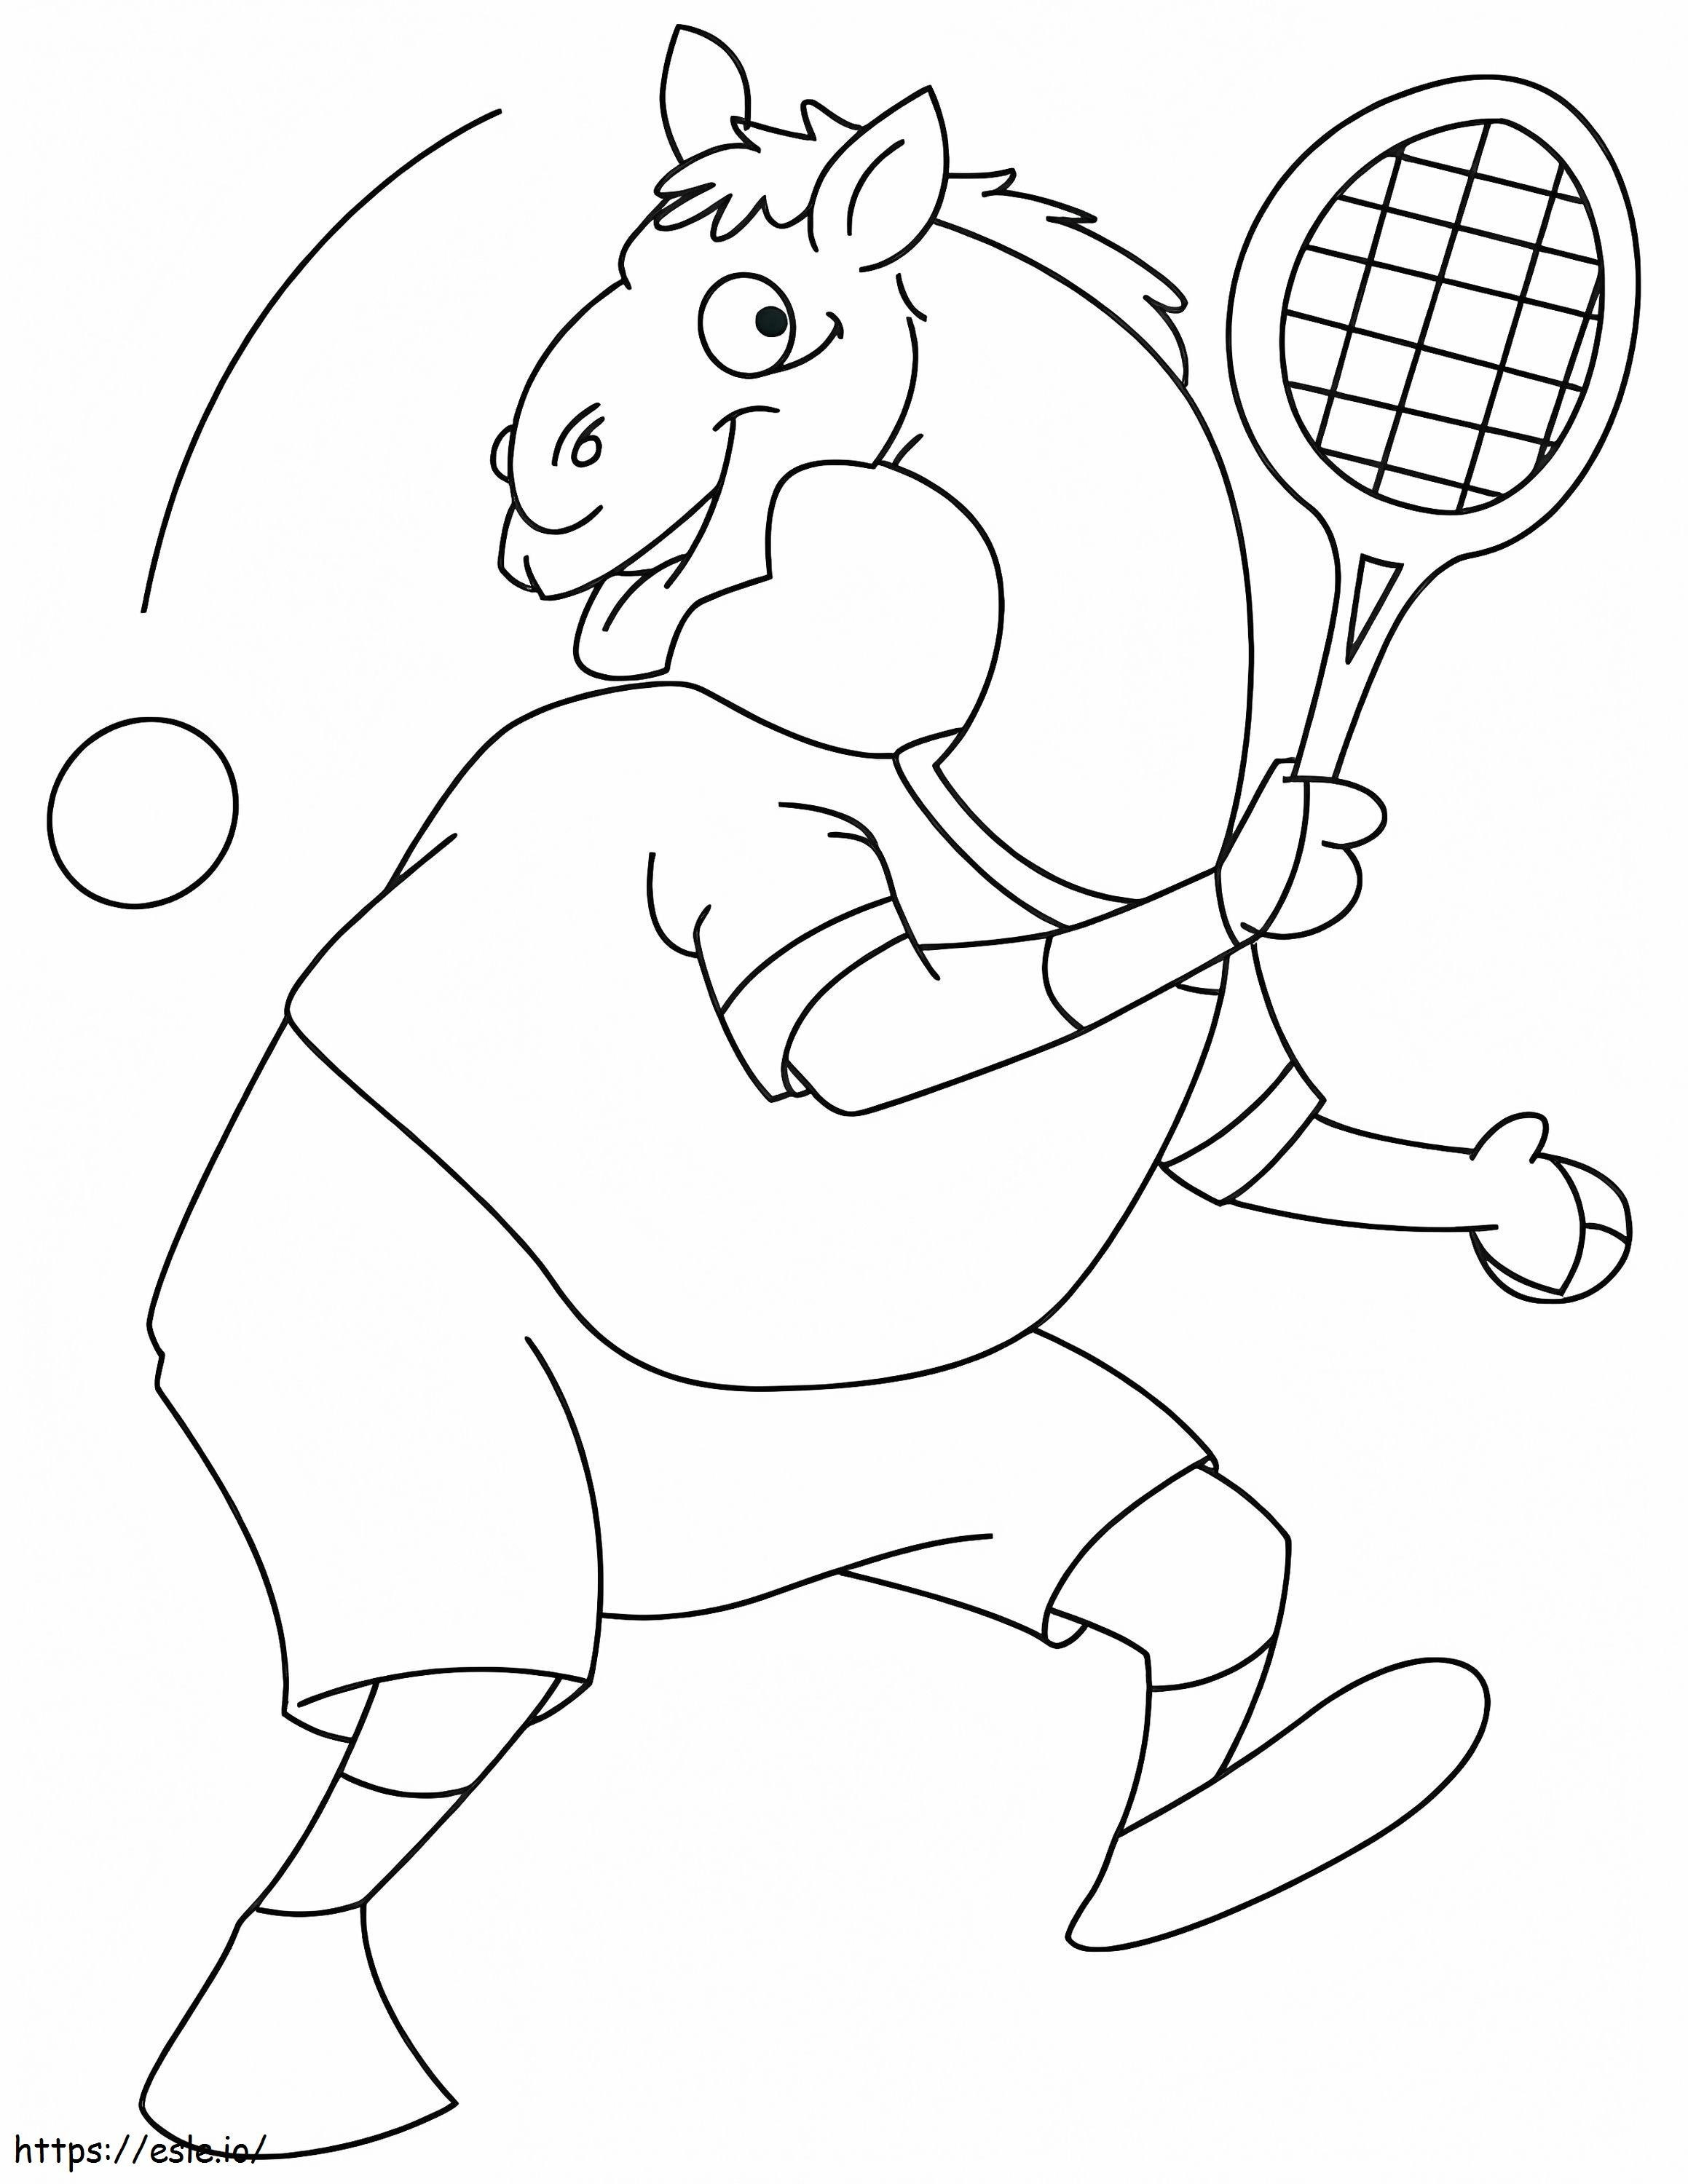  Clever G403918 Tenis Buty do tenisa do wydrukowania Tenis Wielbłąd gra w tenisa Buty do tenisa do wydrukowania Przydatny kort tenisowy kolorowanka